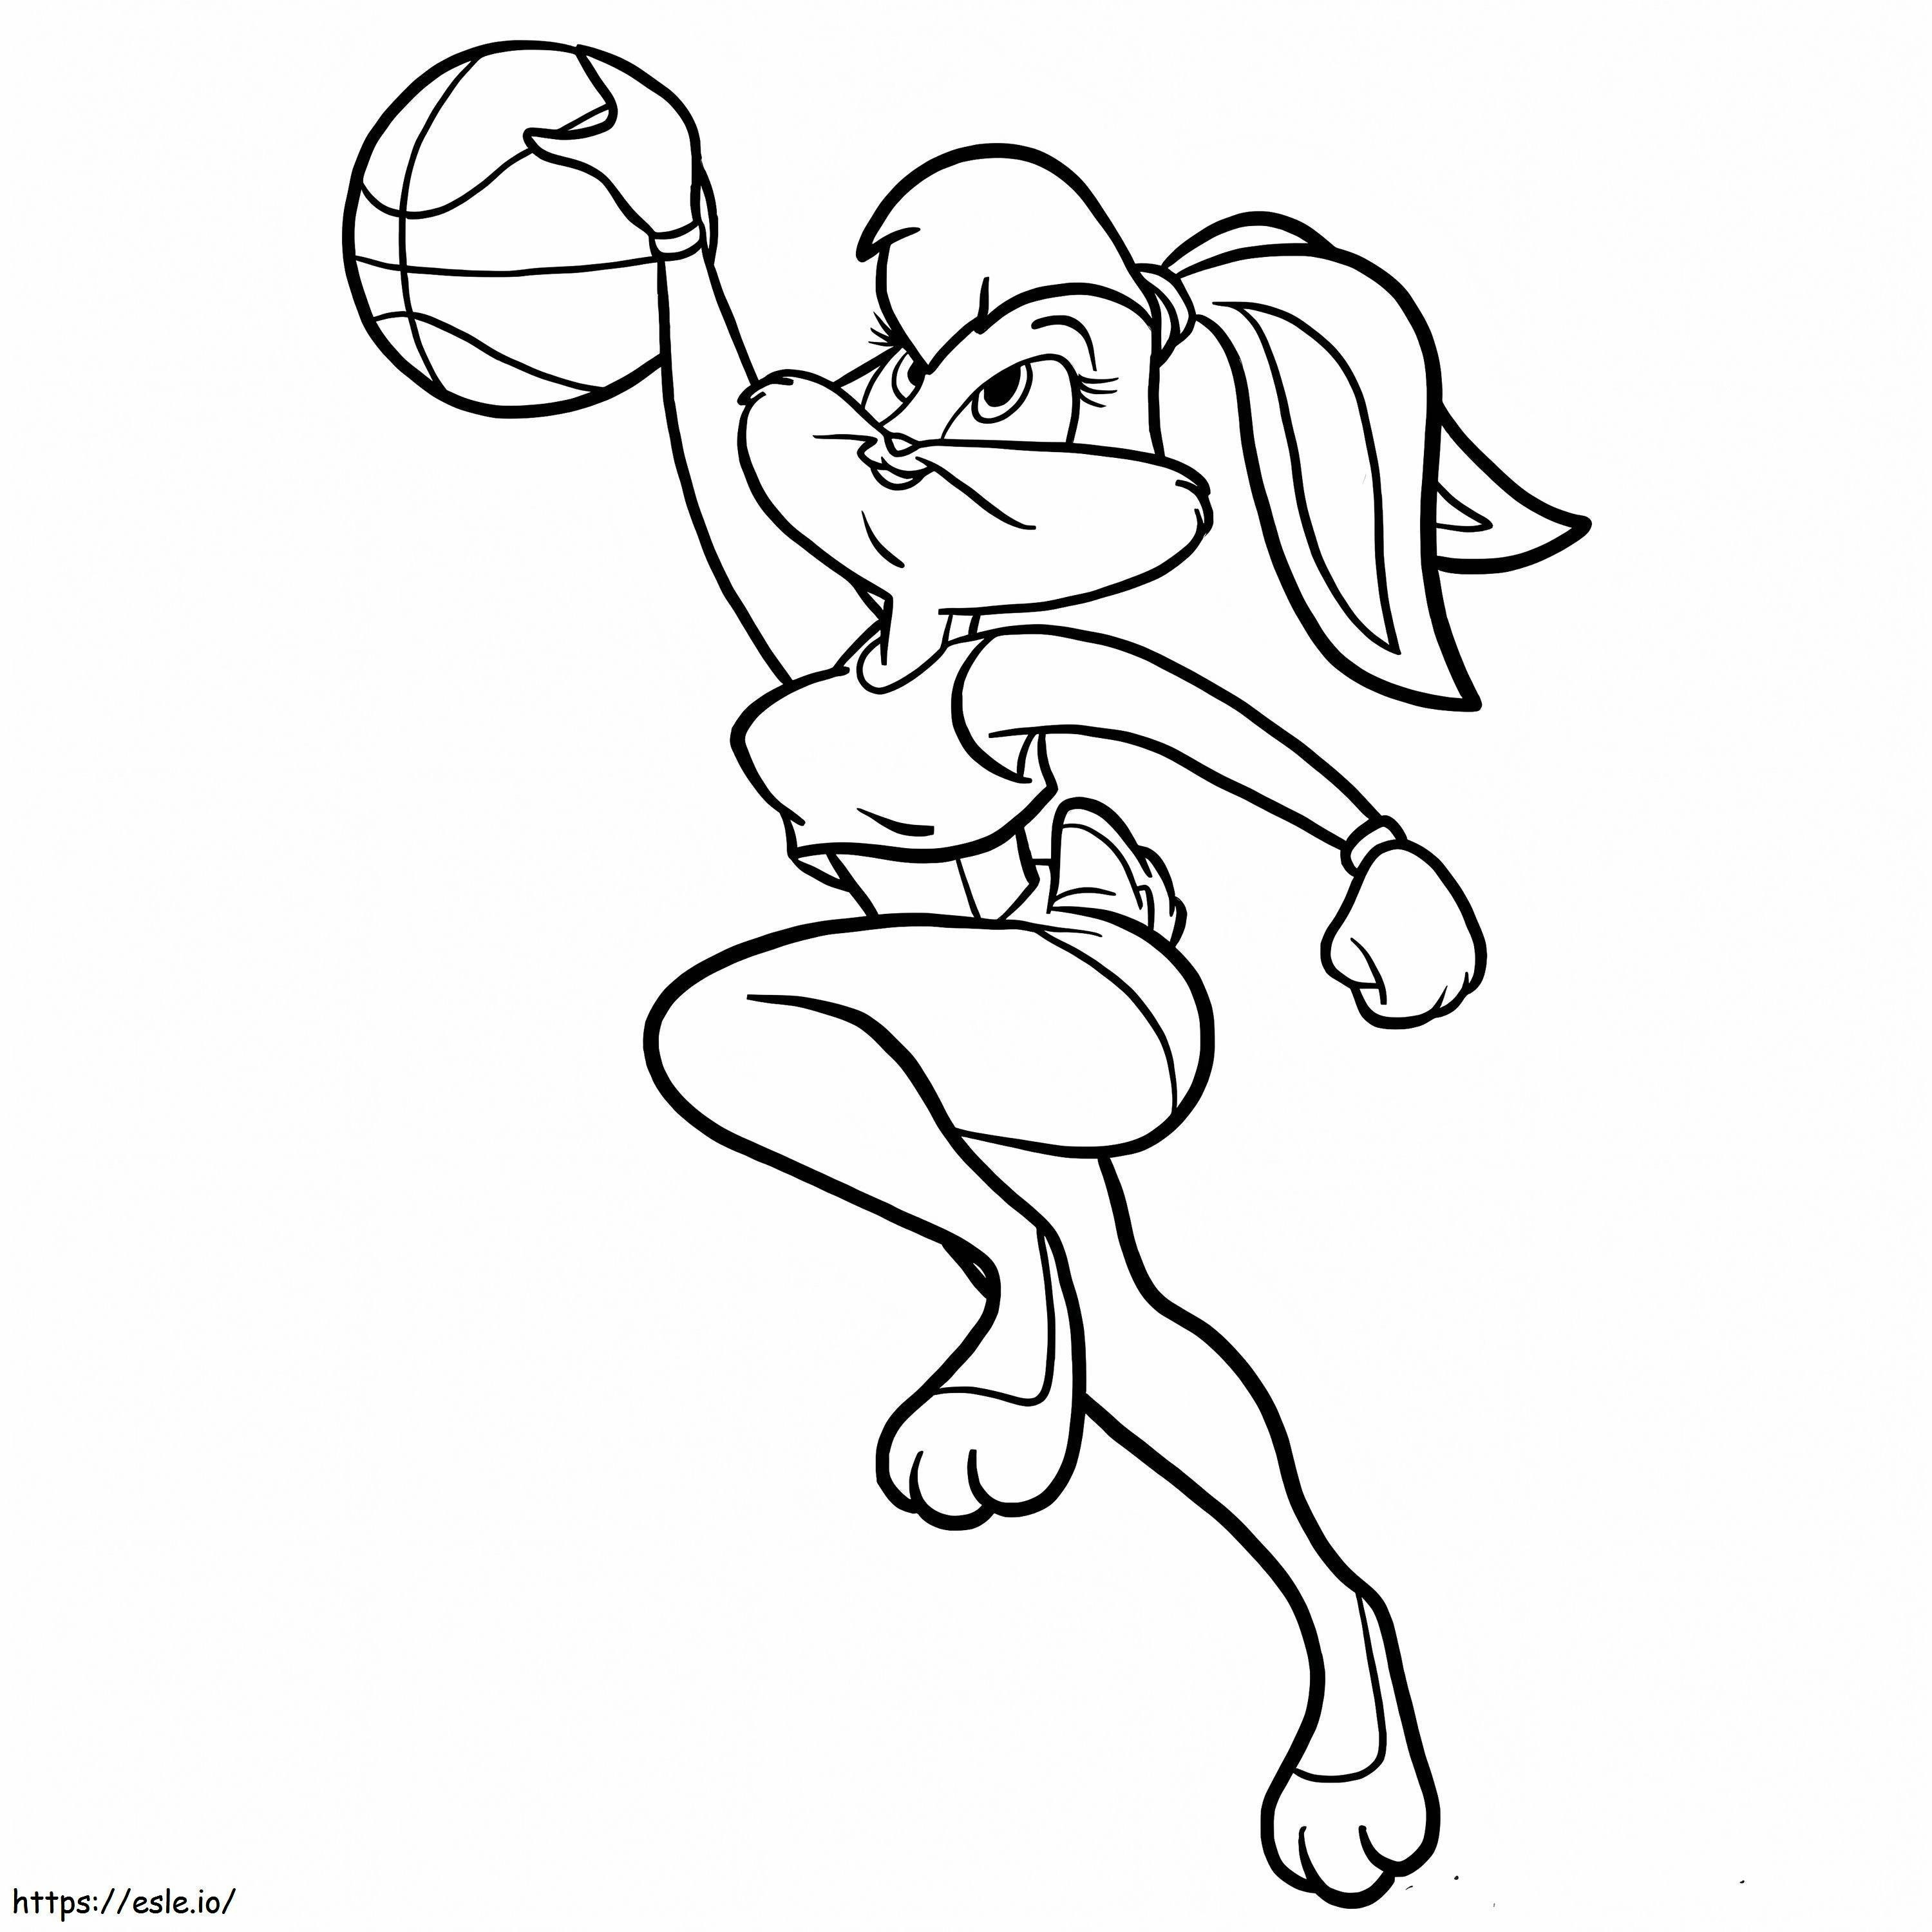 Coloriage Looney Tunes Lola Bunny joue au basket à imprimer dessin